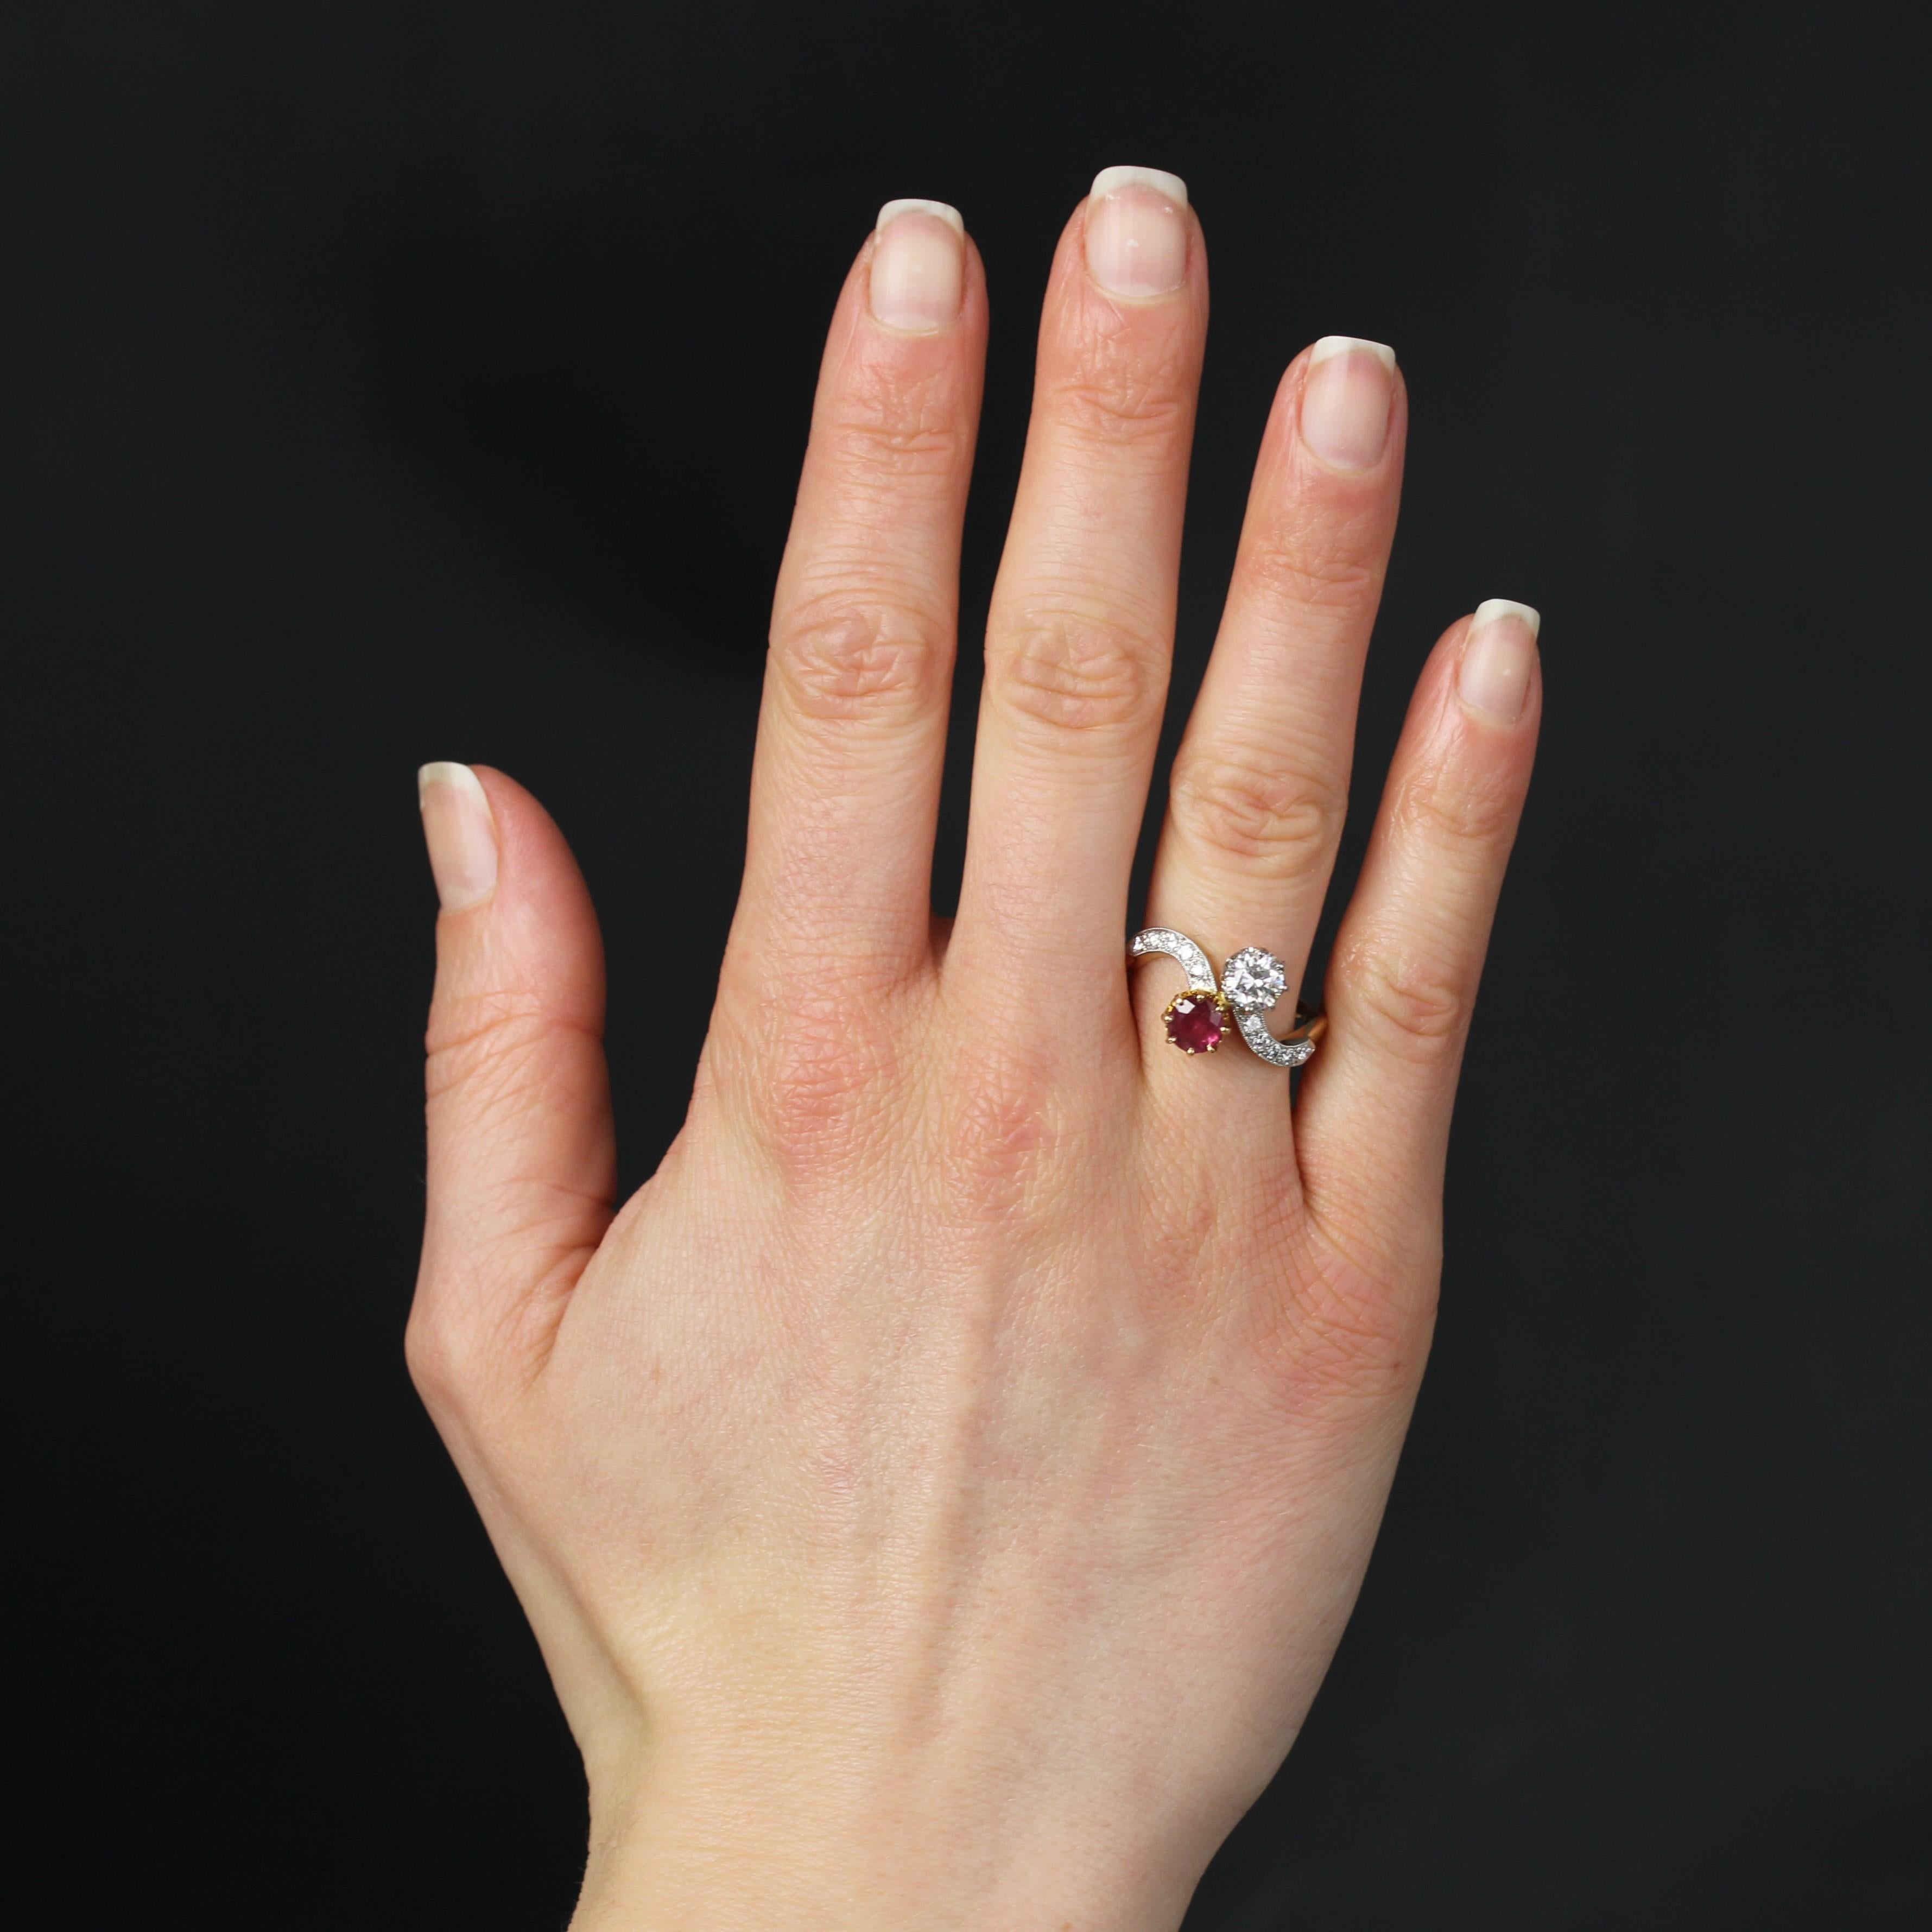 Ring aus 18 Karat Gelbgold und Platin.
Dieser elegante antike Ring trägt den Namen 